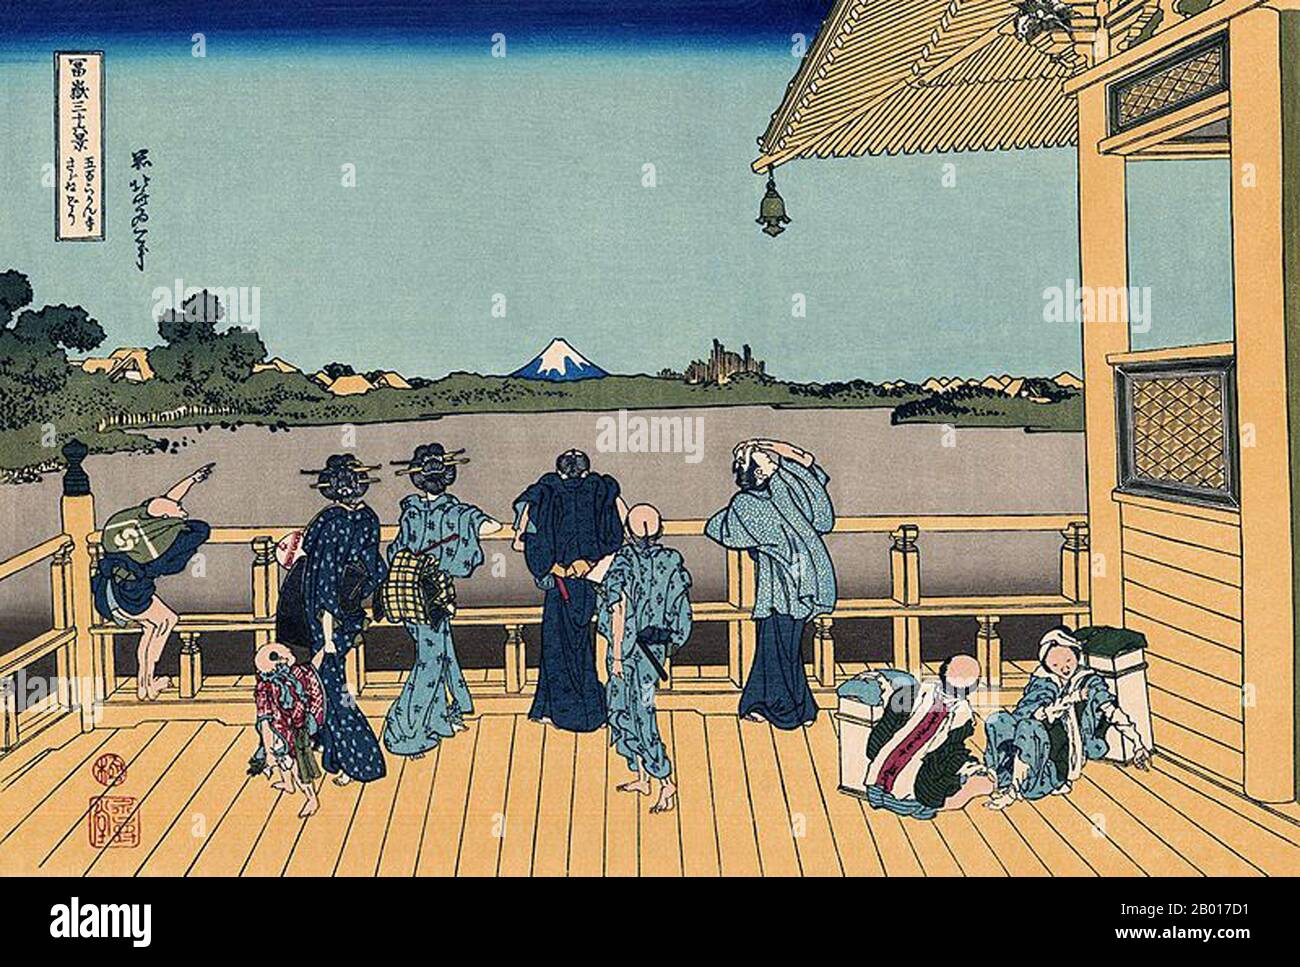 Japan: ‘Sazai Hall - Tempel der fünfhundert Rakan’. Ukiyo-e Holzschnitt aus der Serie ‘Thirty-Six views of Mount Fuji’ von Katsushika Hokusai (31. Oktober 1760 - 10. Mai 1849), 1830. ‘Thirty-Six Views of Mount Fuji’ ist eine Serie von Holzschnitten der japanischen Künstlerin Katsushika Hokusai, die „Sukiyo-e“ ‘. Die Serie zeigt den Fuji in unterschiedlichen Jahreszeiten und Wetterbedingungen an verschiedenen Orten und Entfernungen. Es besteht tatsächlich aus 46 Drucken, die zwischen 1826 und 1833 entstanden sind. Die ersten 36 wurden in die ursprüngliche Publikation aufgenommen und aufgrund ihrer Popularität kamen 10 weitere hinzu. Stockfoto